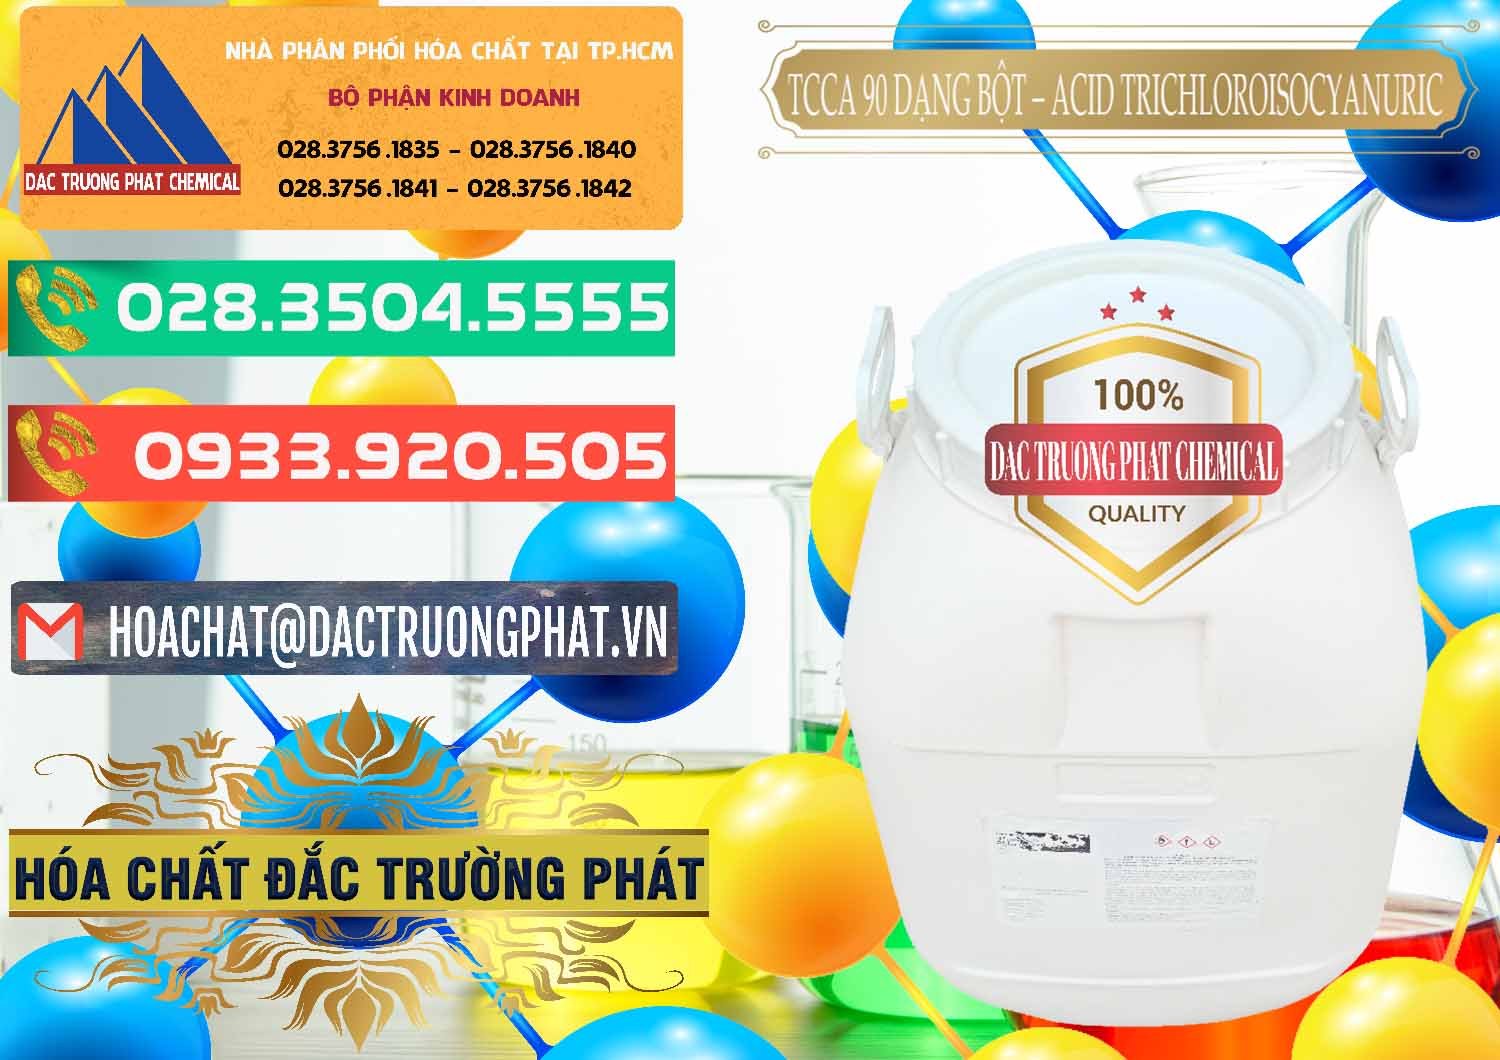 Phân phối _ bán TCCA - Acid Trichloroisocyanuric 90% Dạng Bột Trung Quốc China - 0161 - Cty chuyên kinh doanh ( phân phối ) hóa chất tại TP.HCM - congtyhoachat.com.vn